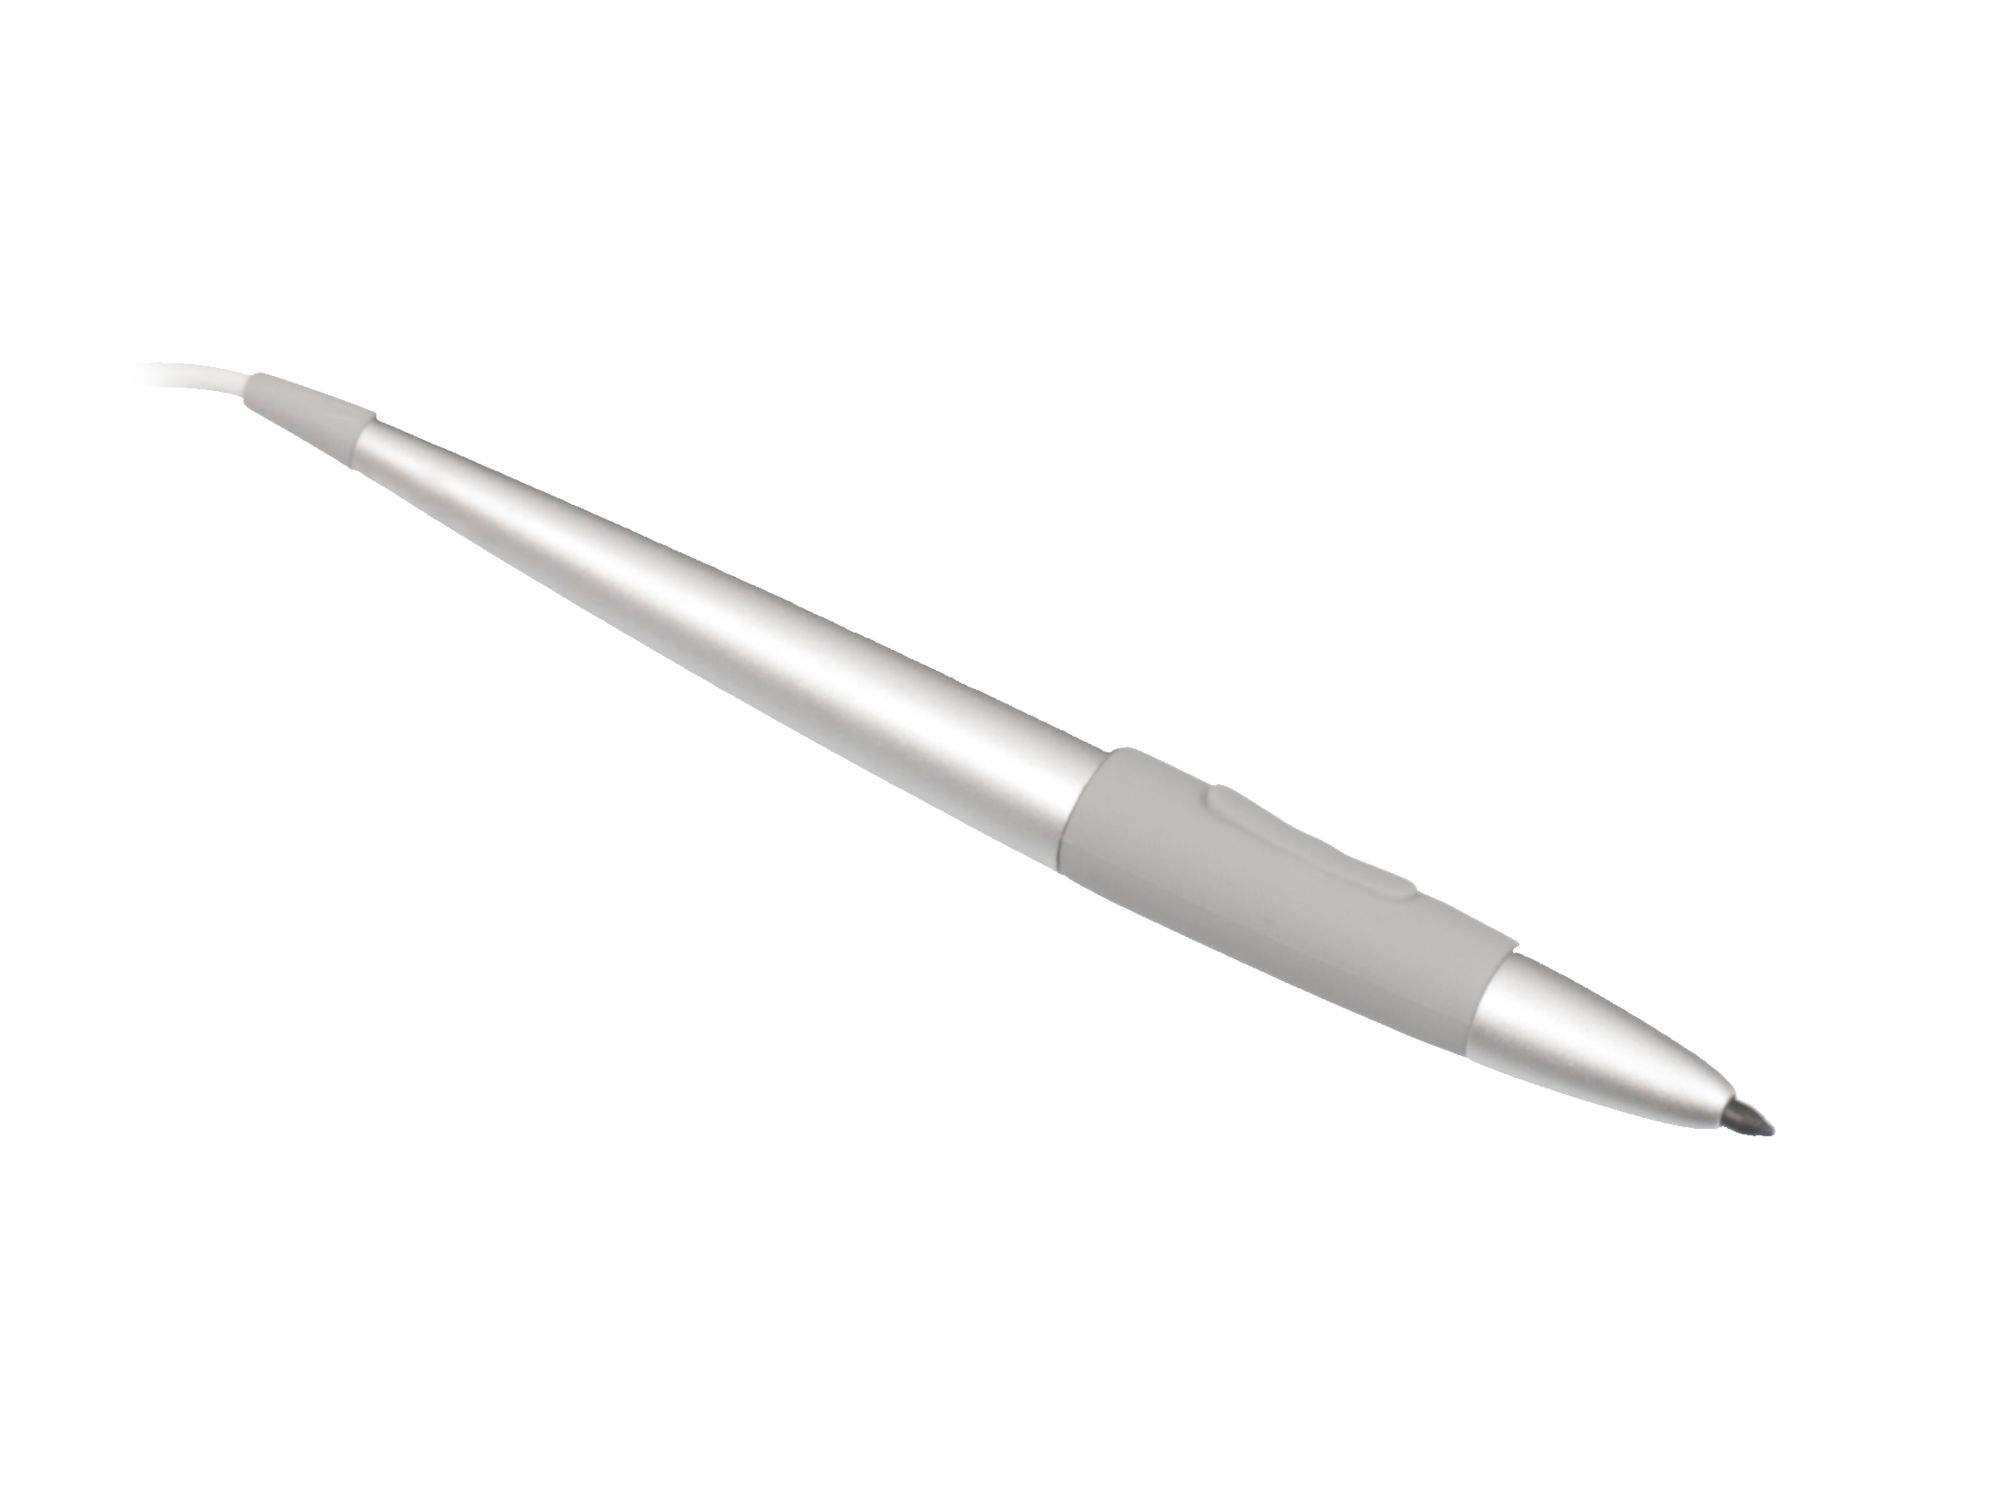 ASUS 04190-00090000 Stylus Pen / Eingabestift silber Original